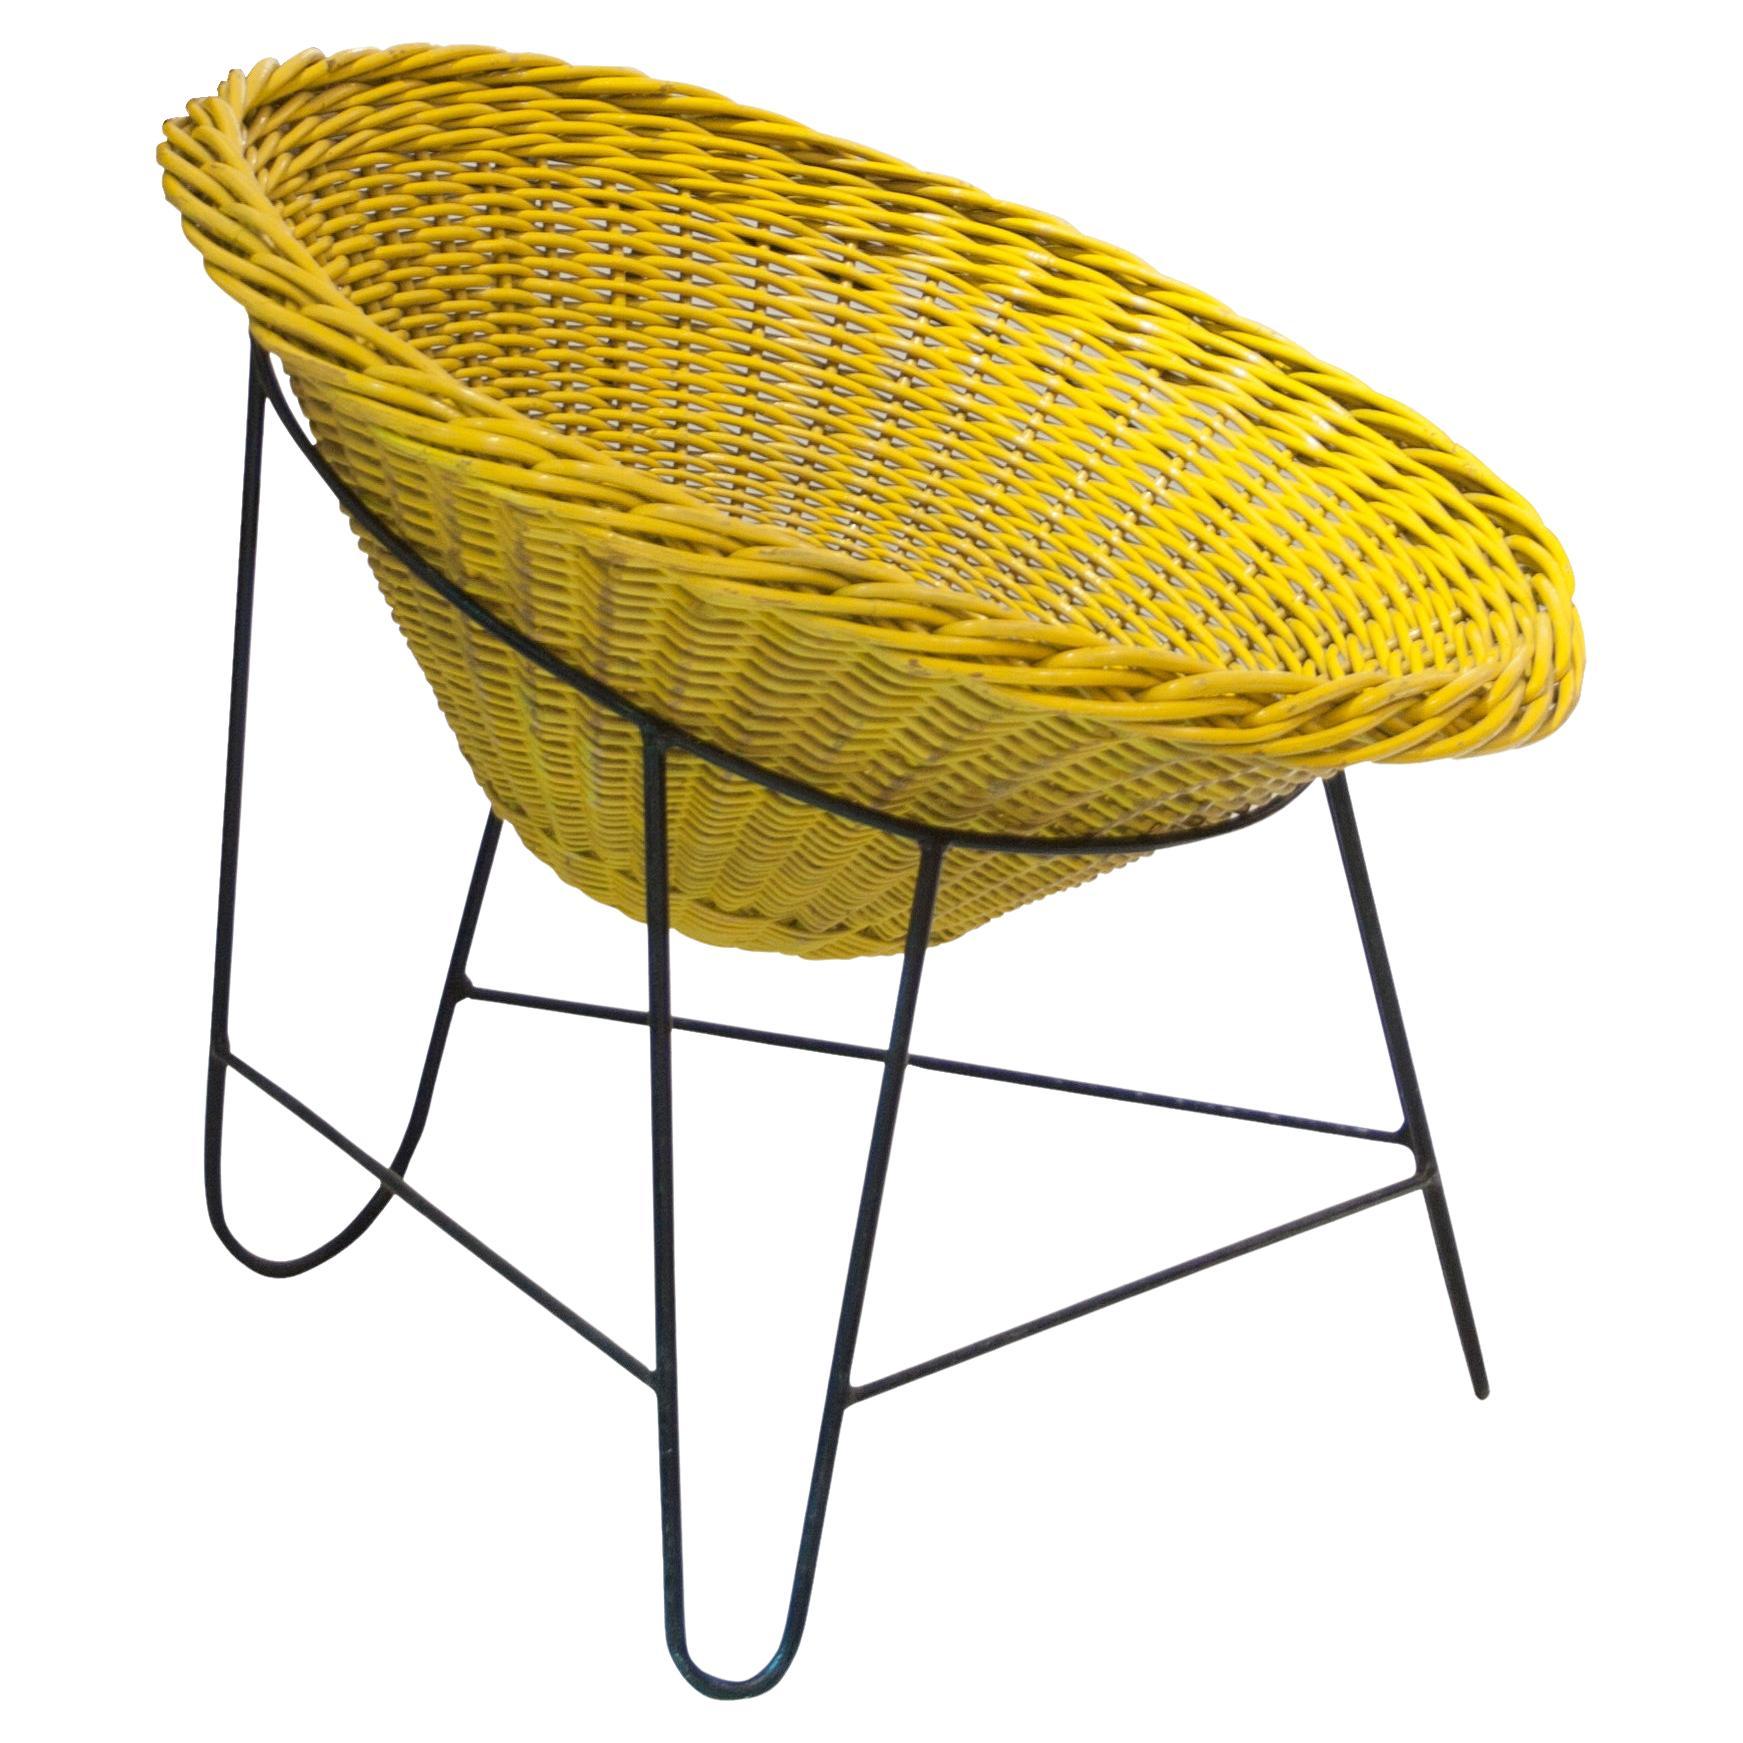 Mathieu Matégot "Wicker" Chair Made with Iron and Natural Fiber, France, 1950